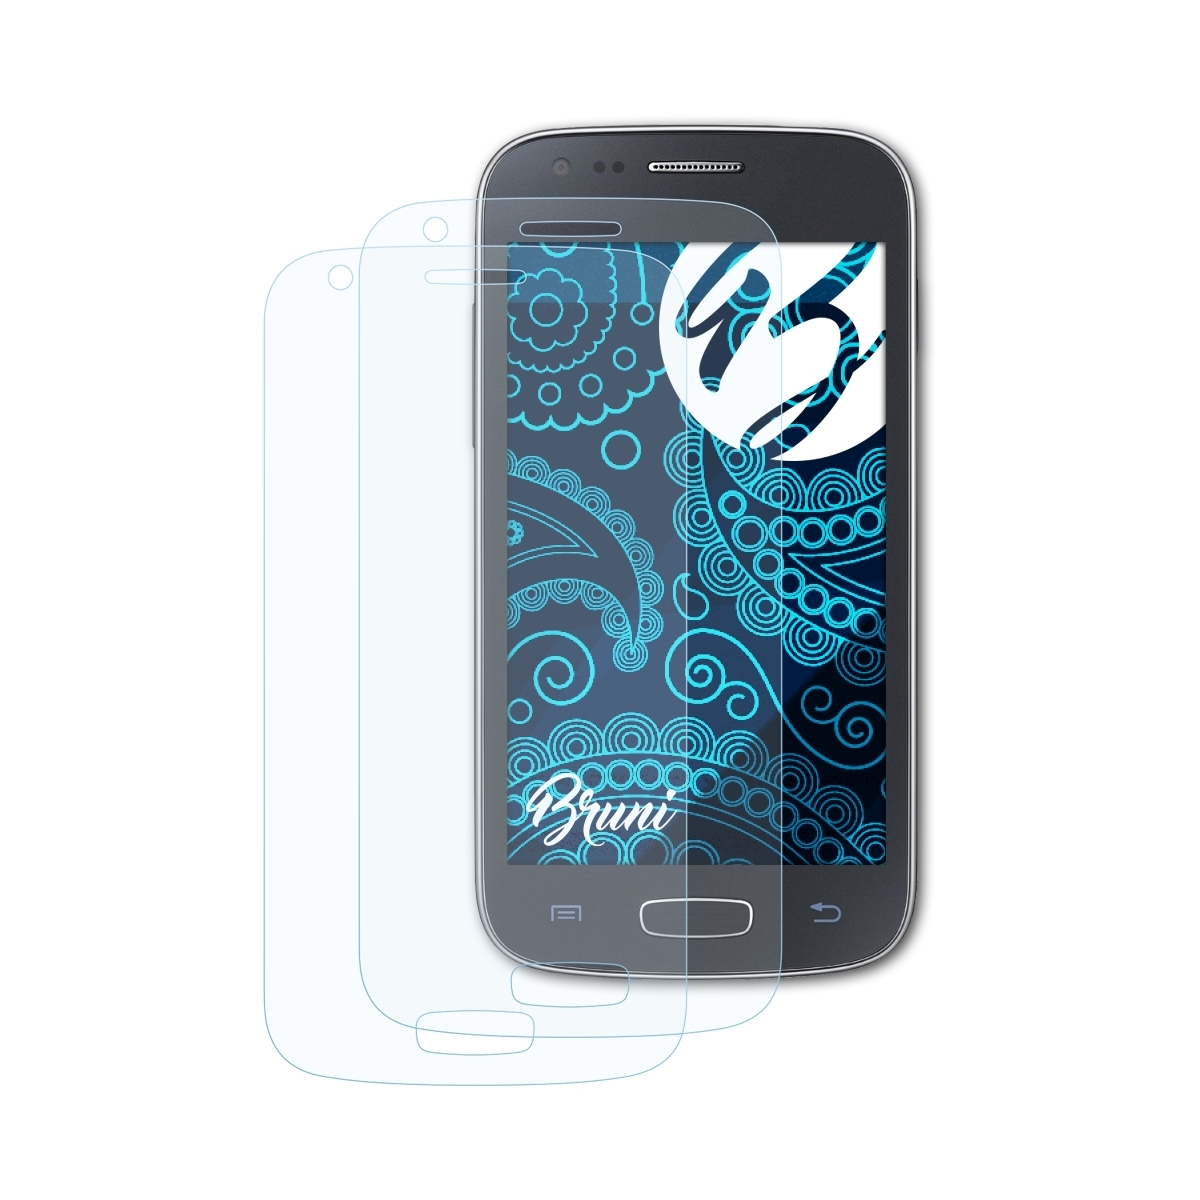 Basics-Clear Samsung Galaxy Ace Schutzfolie(für 3) 2x BRUNI